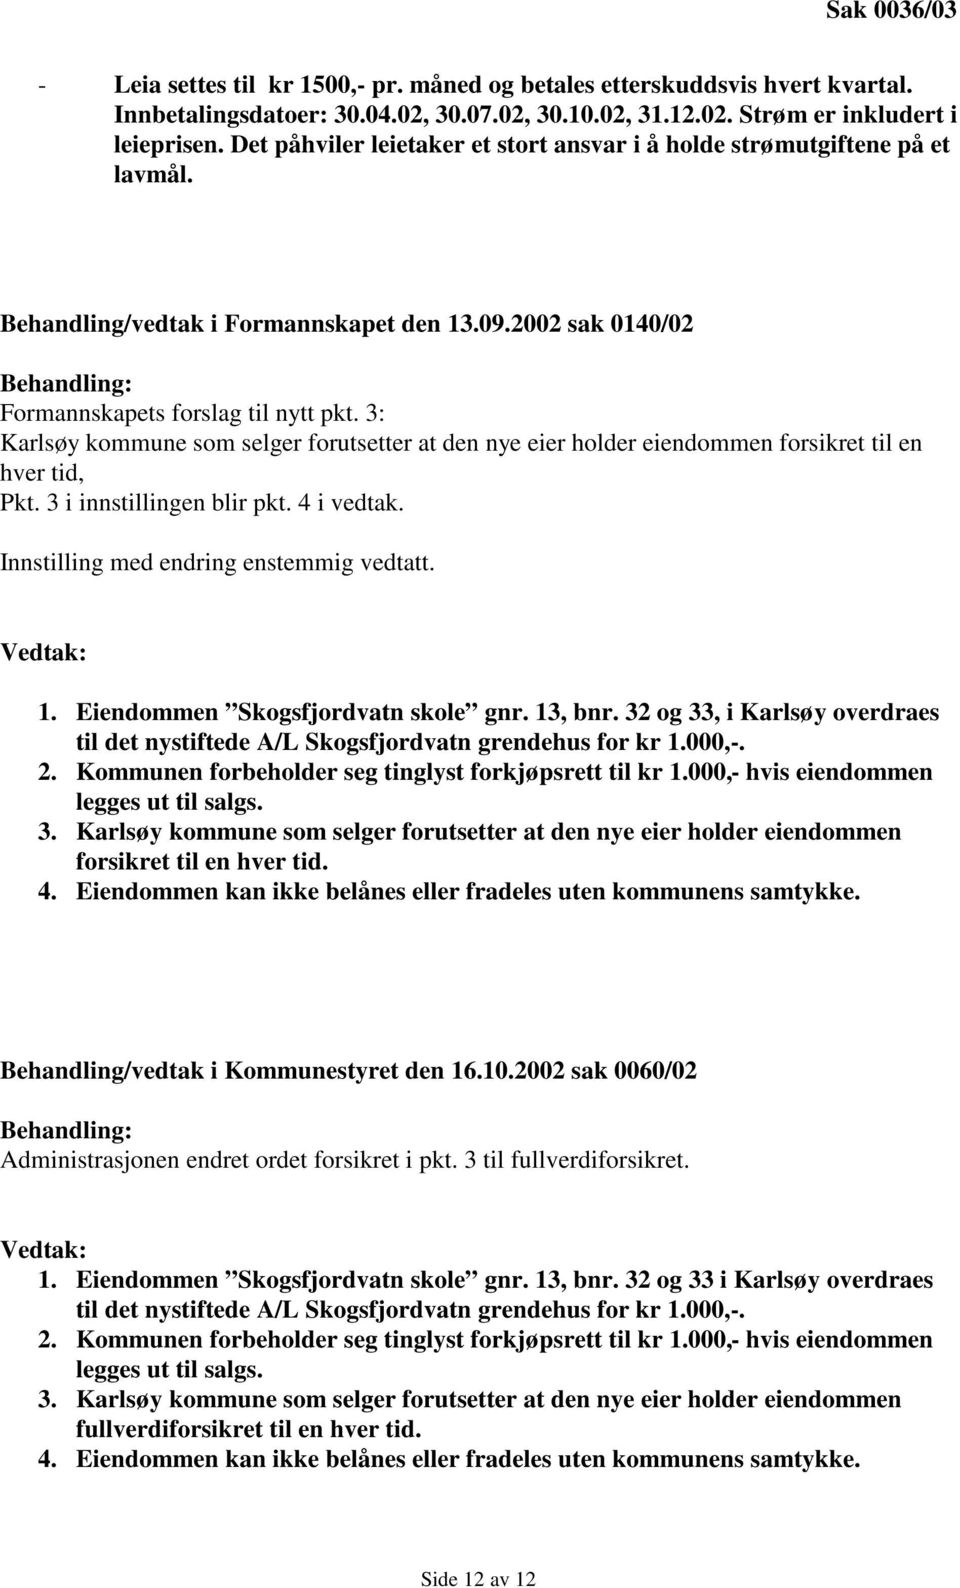 3: Karlsøy kommune som selger forutsetter at den nye eier holder eiendommen forsikret til en hver tid, Pkt. 3 i innstillingen blir pkt. 4 i vedtak. Innstilling med endring enstemmig vedtatt.